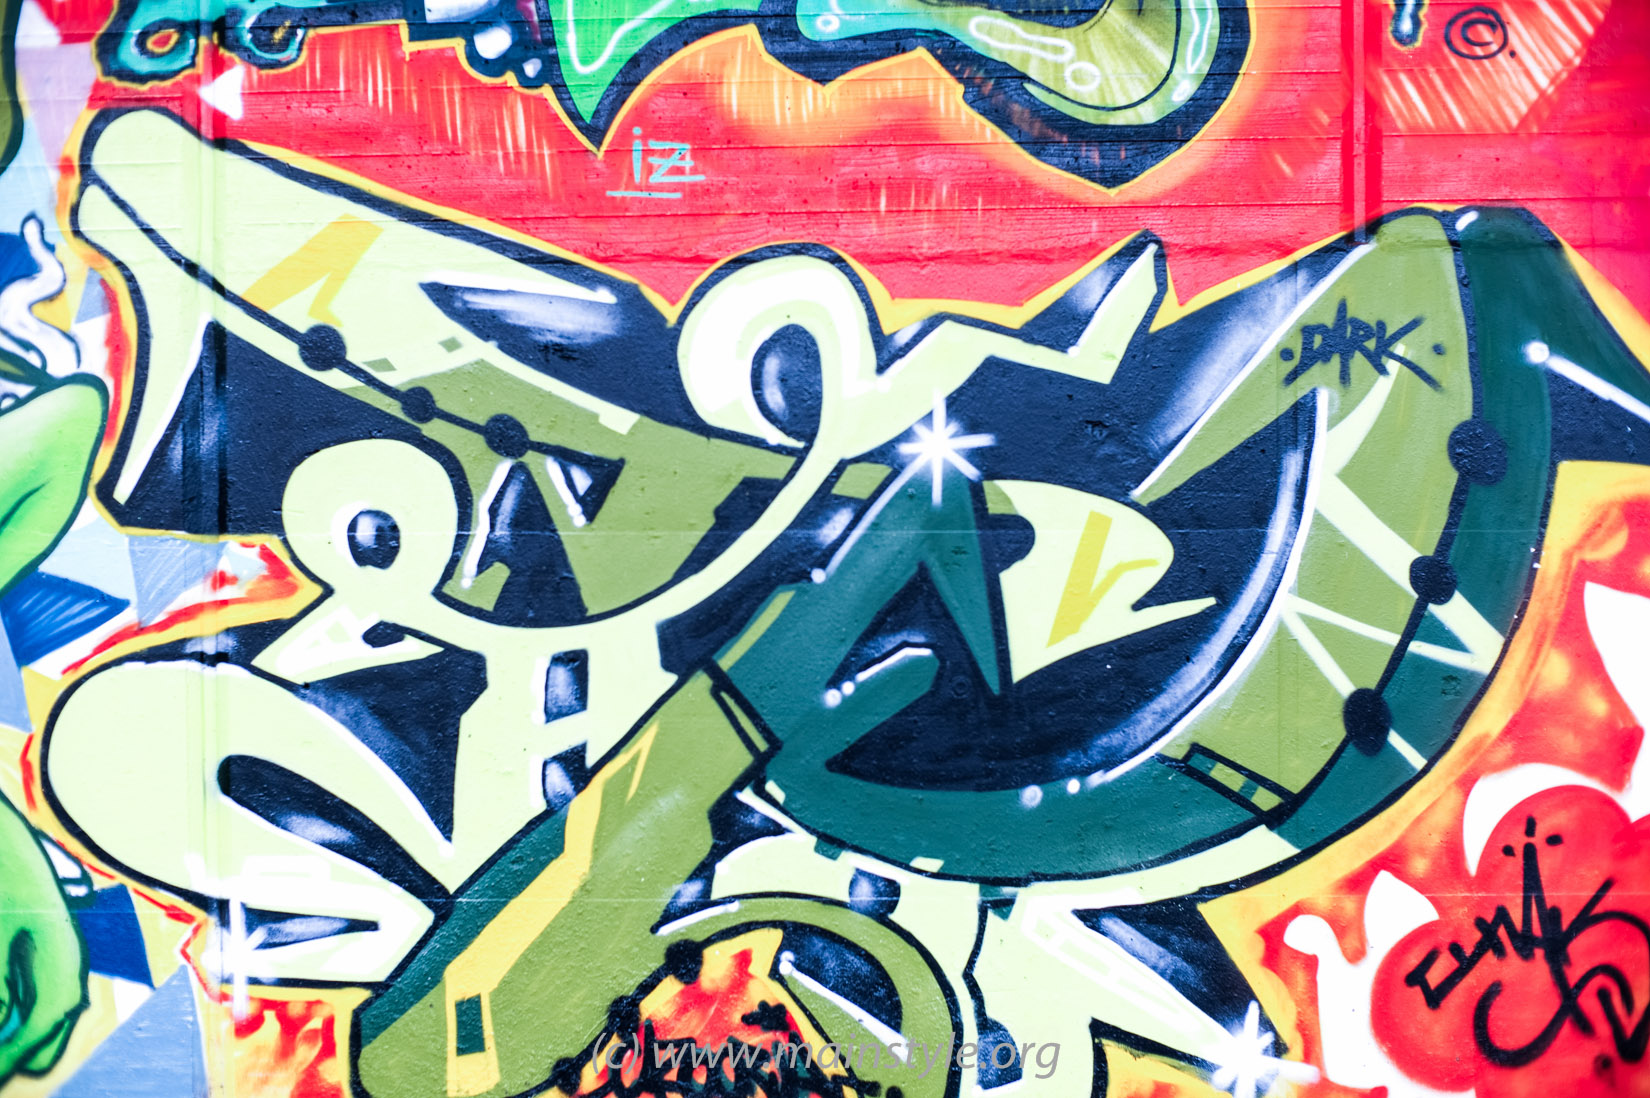 Frankfurt-Höchst_Graffiti_Süwag-Wall_2012 (9 von 35)